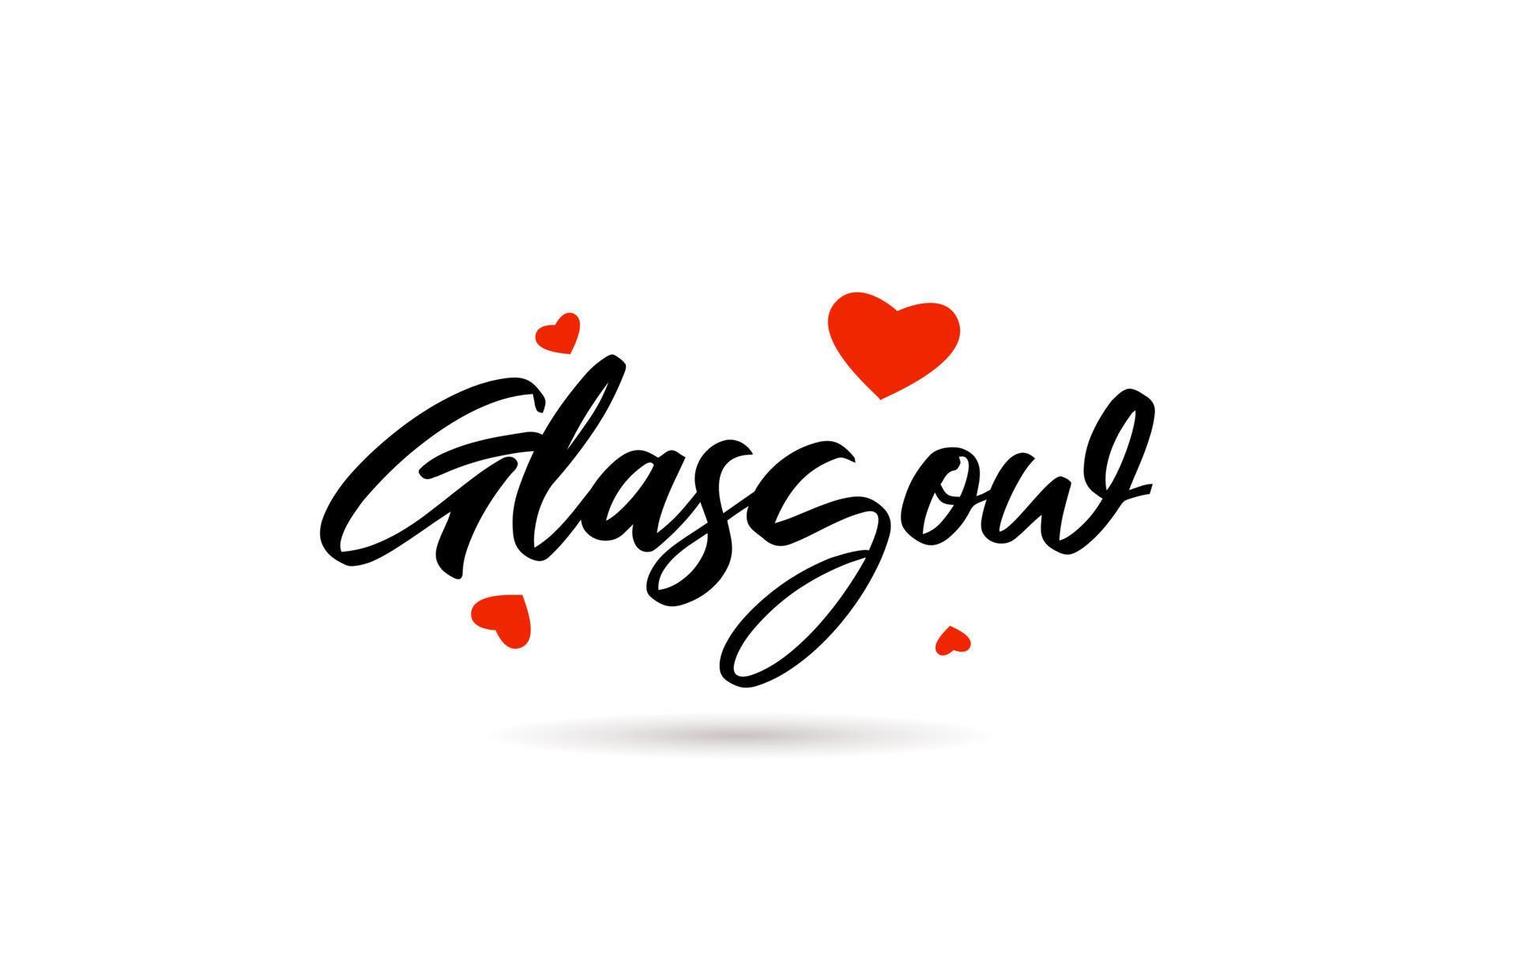 Glasgow escrito ciudad tipografía texto con amor corazón vector